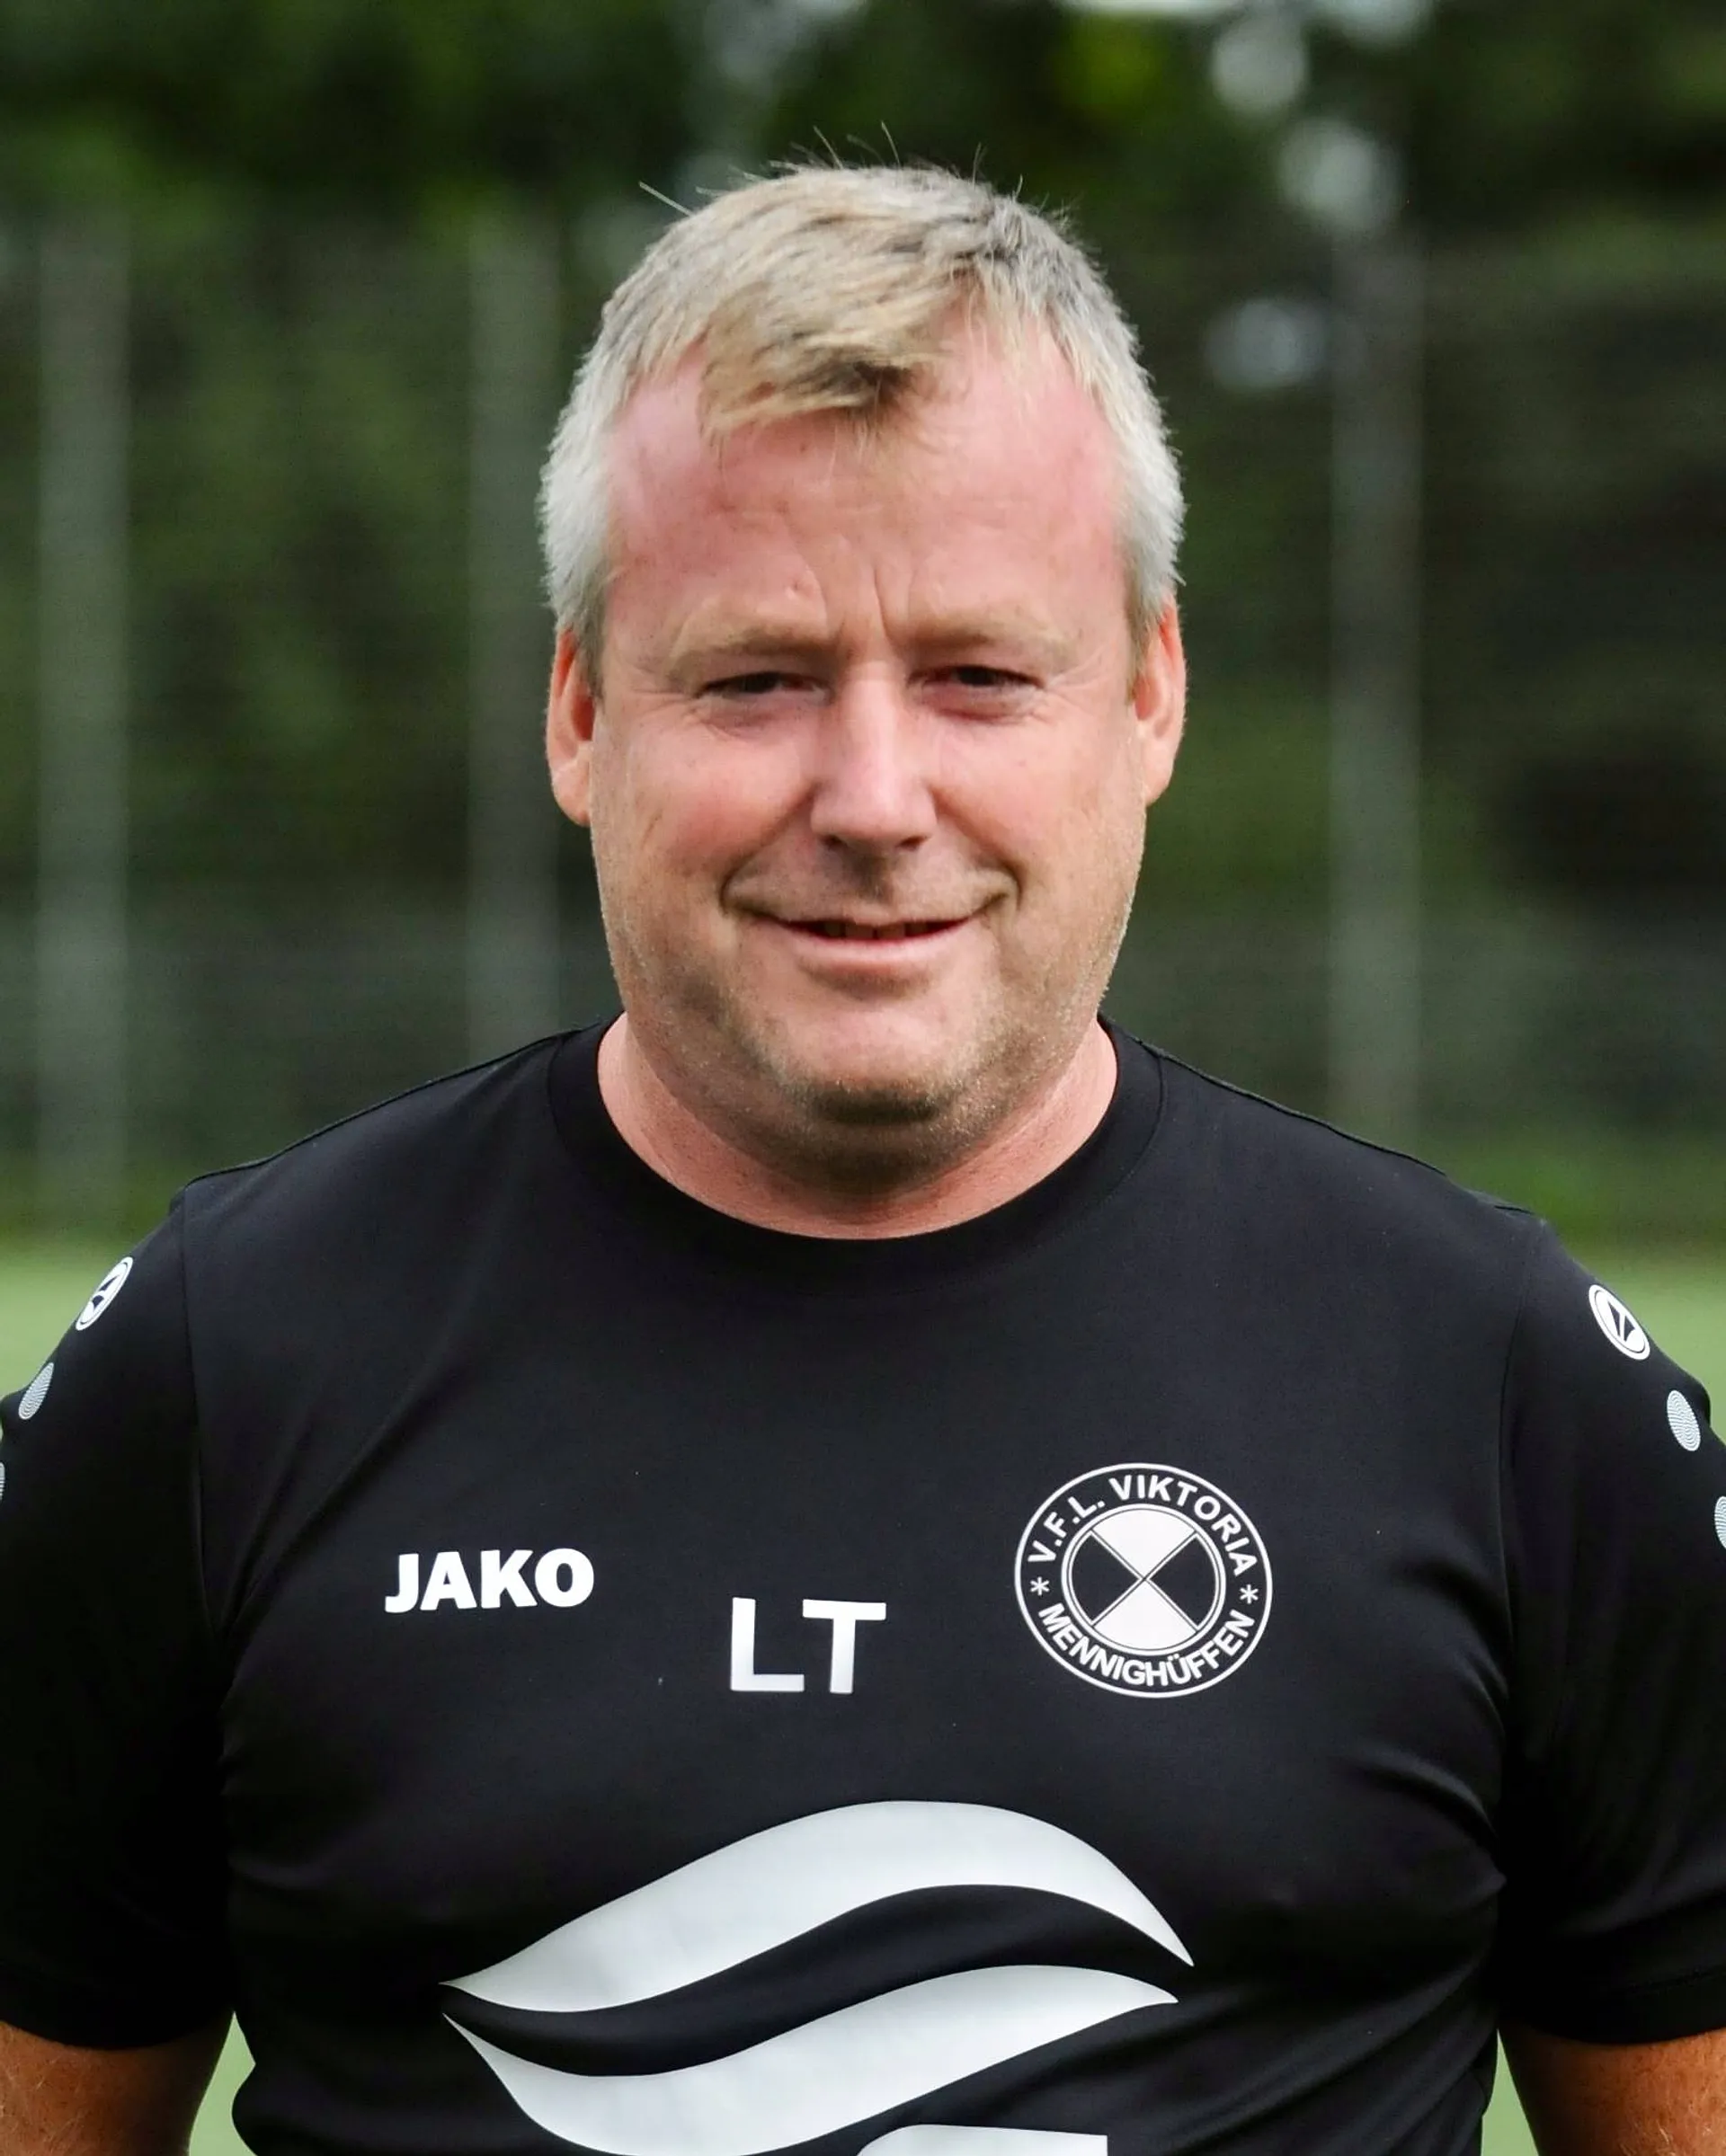 Herzlich Willkommen! Lars Thielking übernimmt zur neuen Saison die Spvg. Hiddenhausen und wird damit der 24. Trainer der ersten Mannschaft unserer Vereinsgeschichte. 